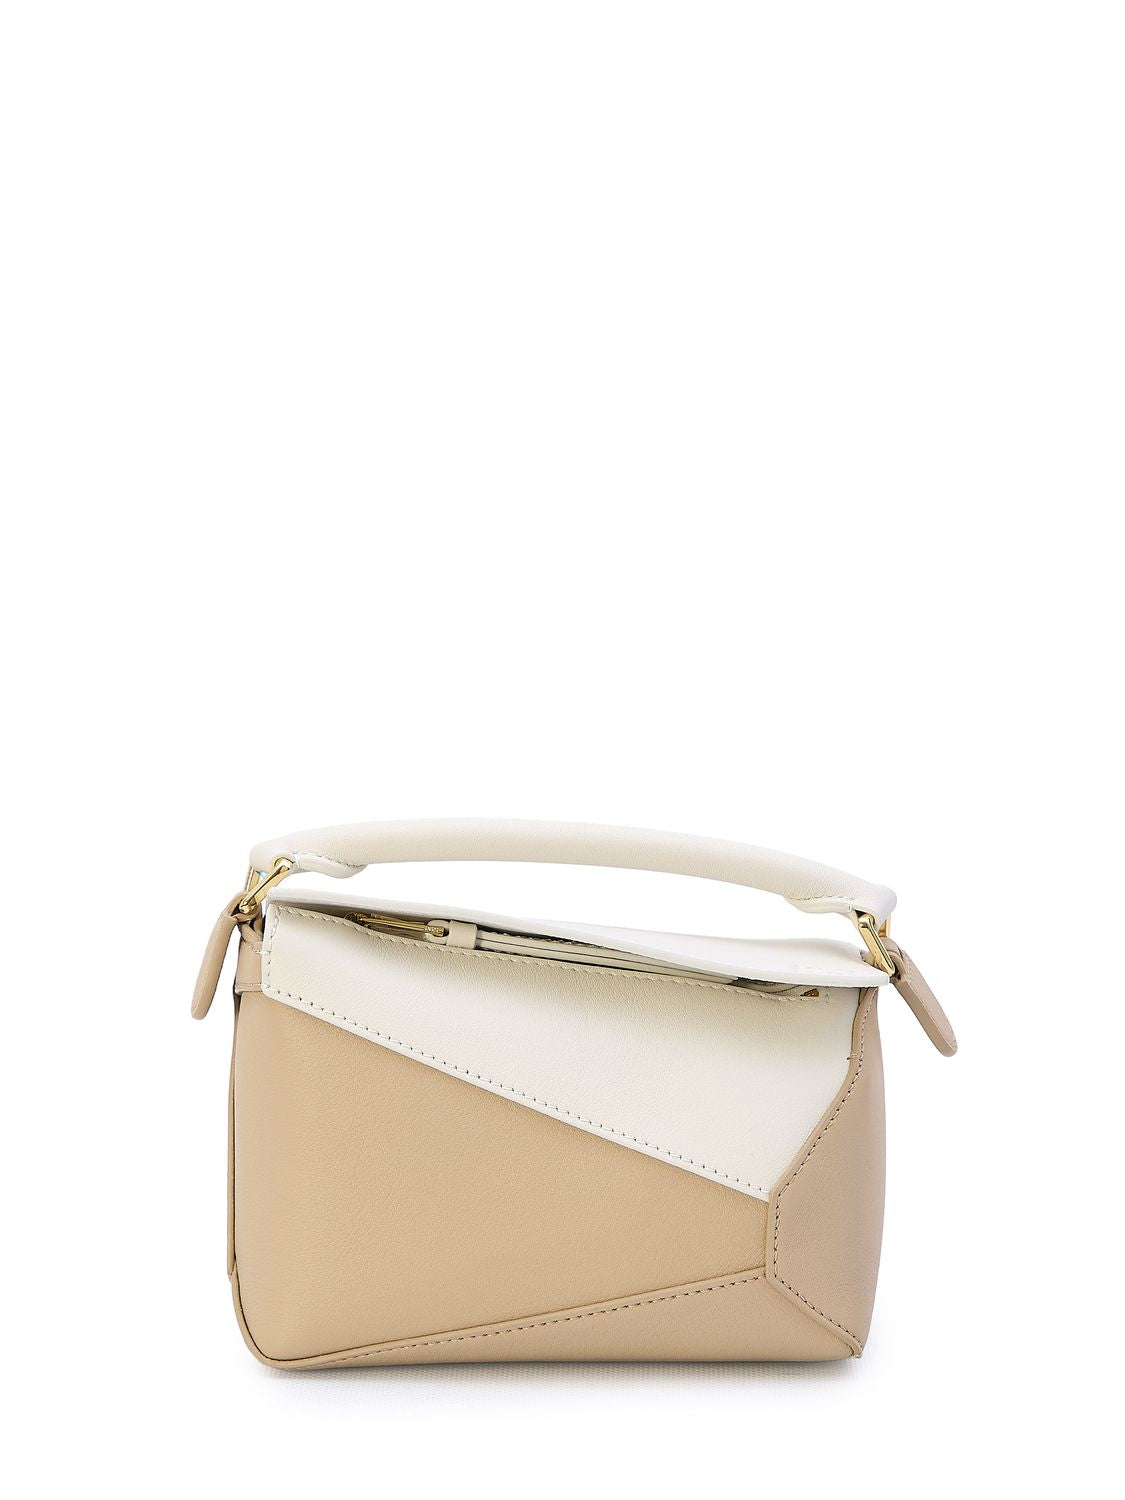 Túi xách nhỏ hình học đẹp tinh tế từ da bê trắng và beige